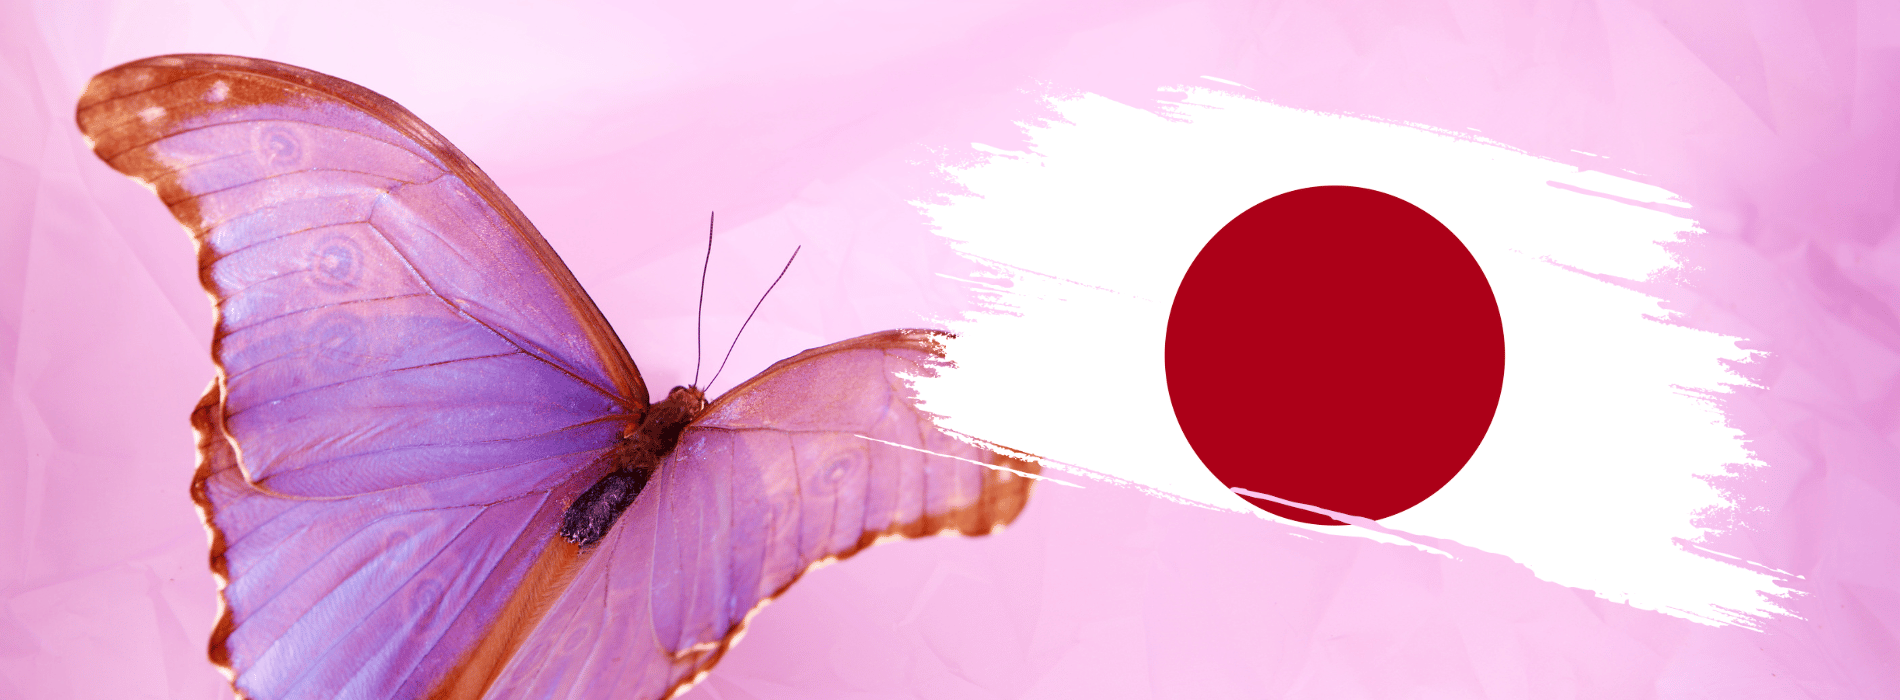 simbolismo de la mariposa en Japón